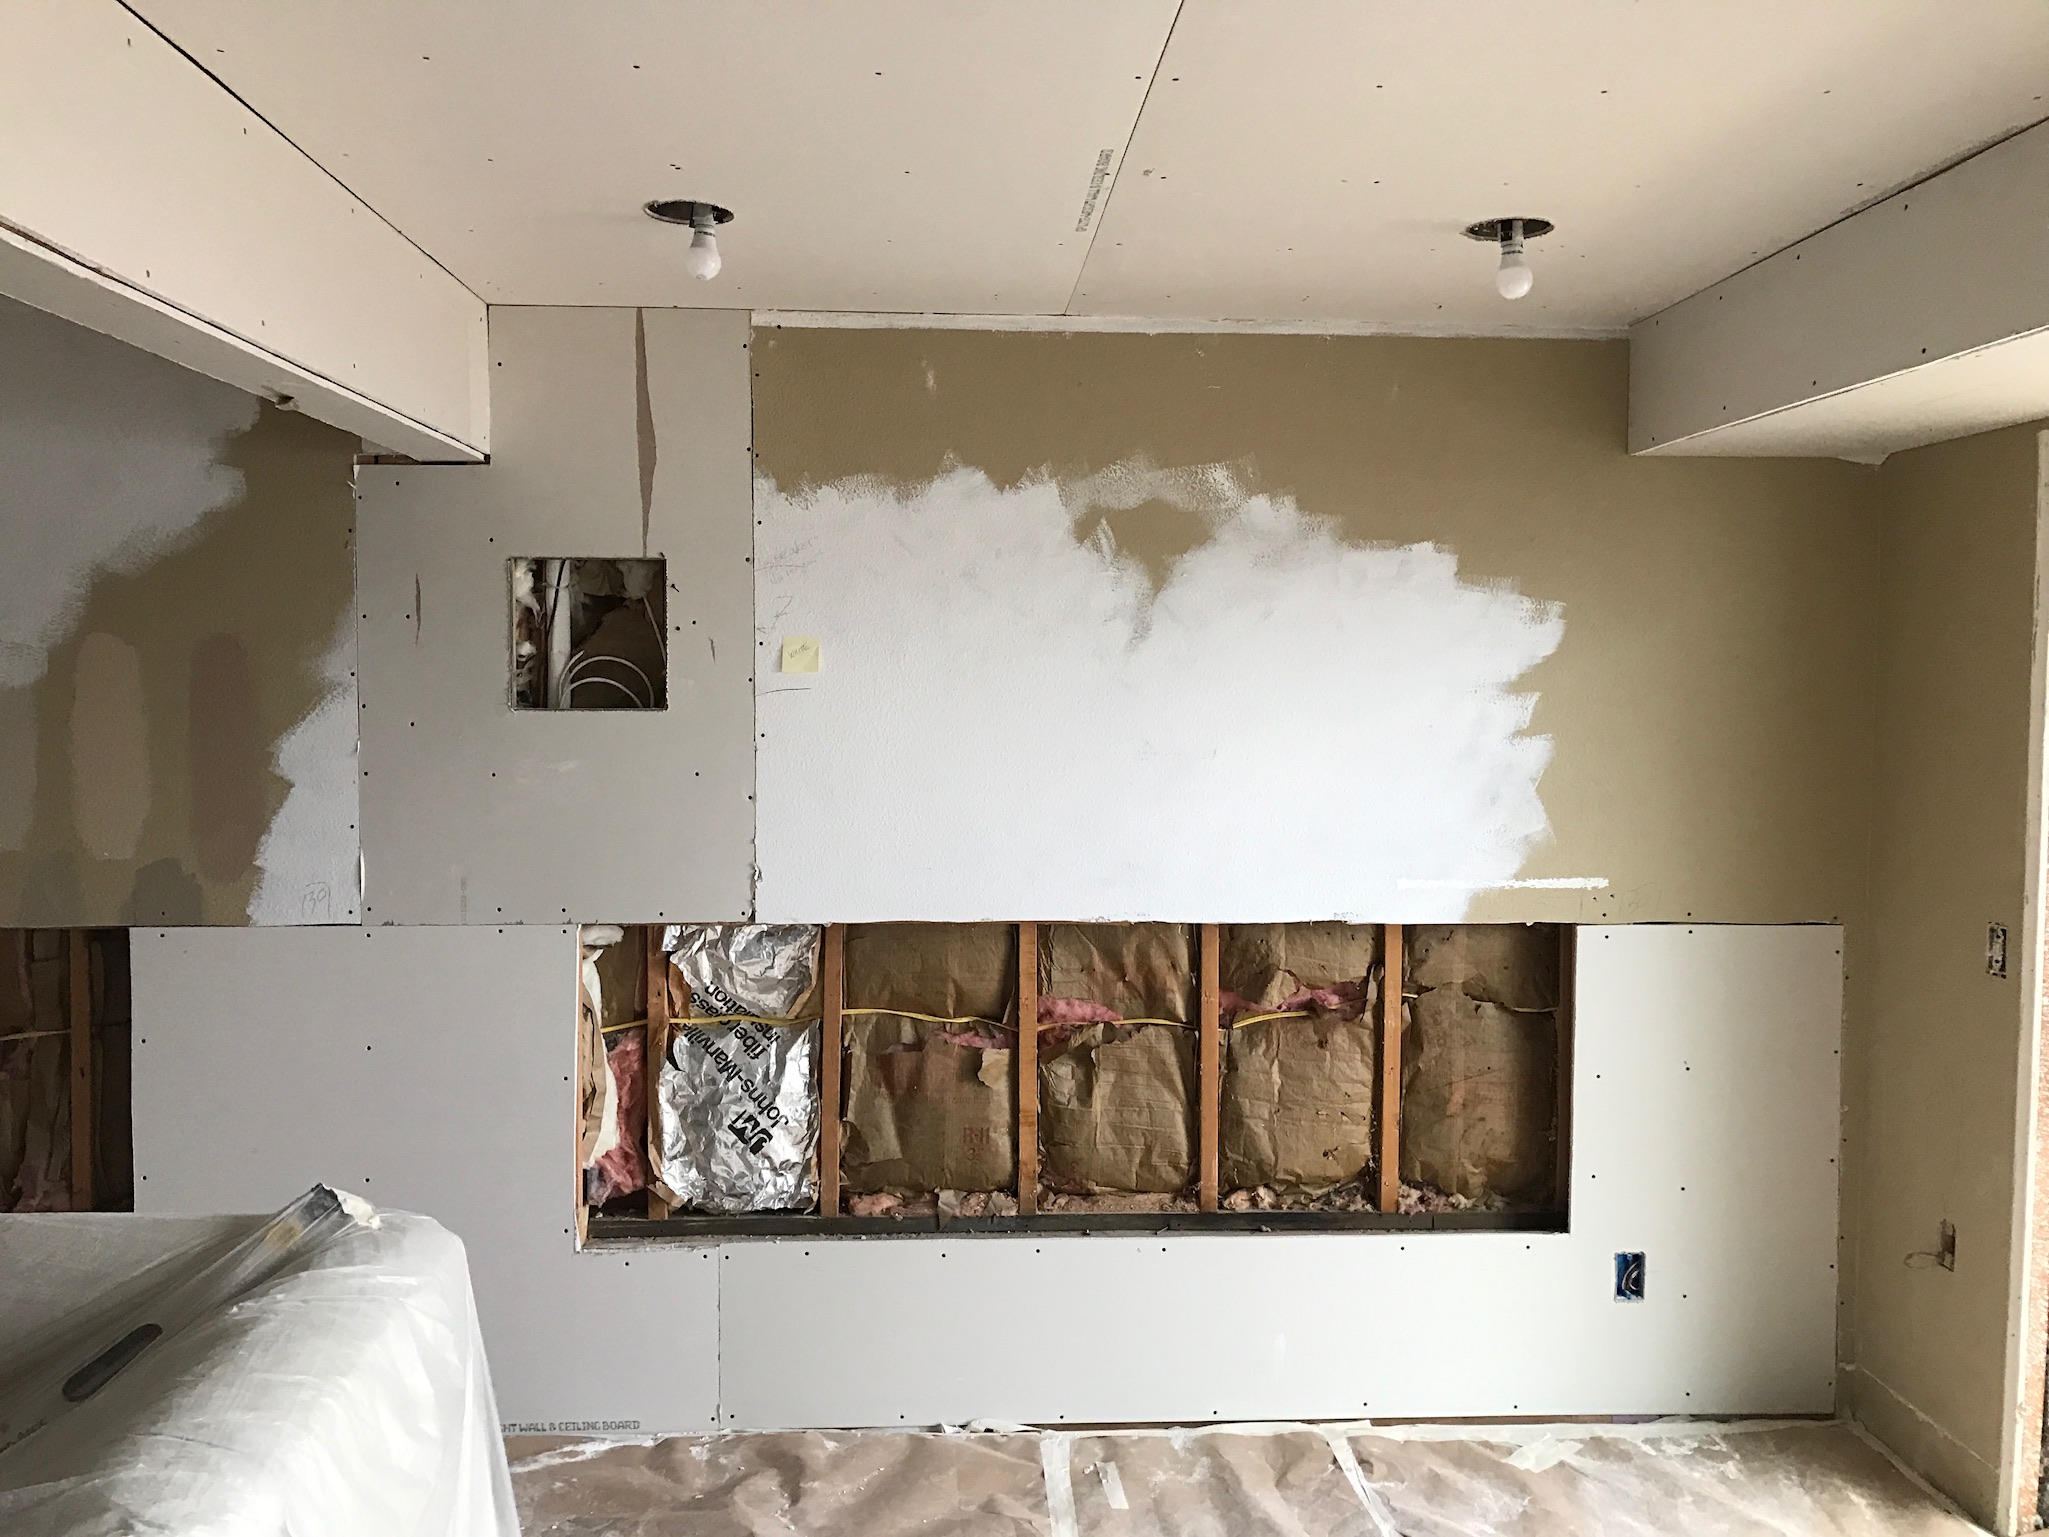 Adding drywall